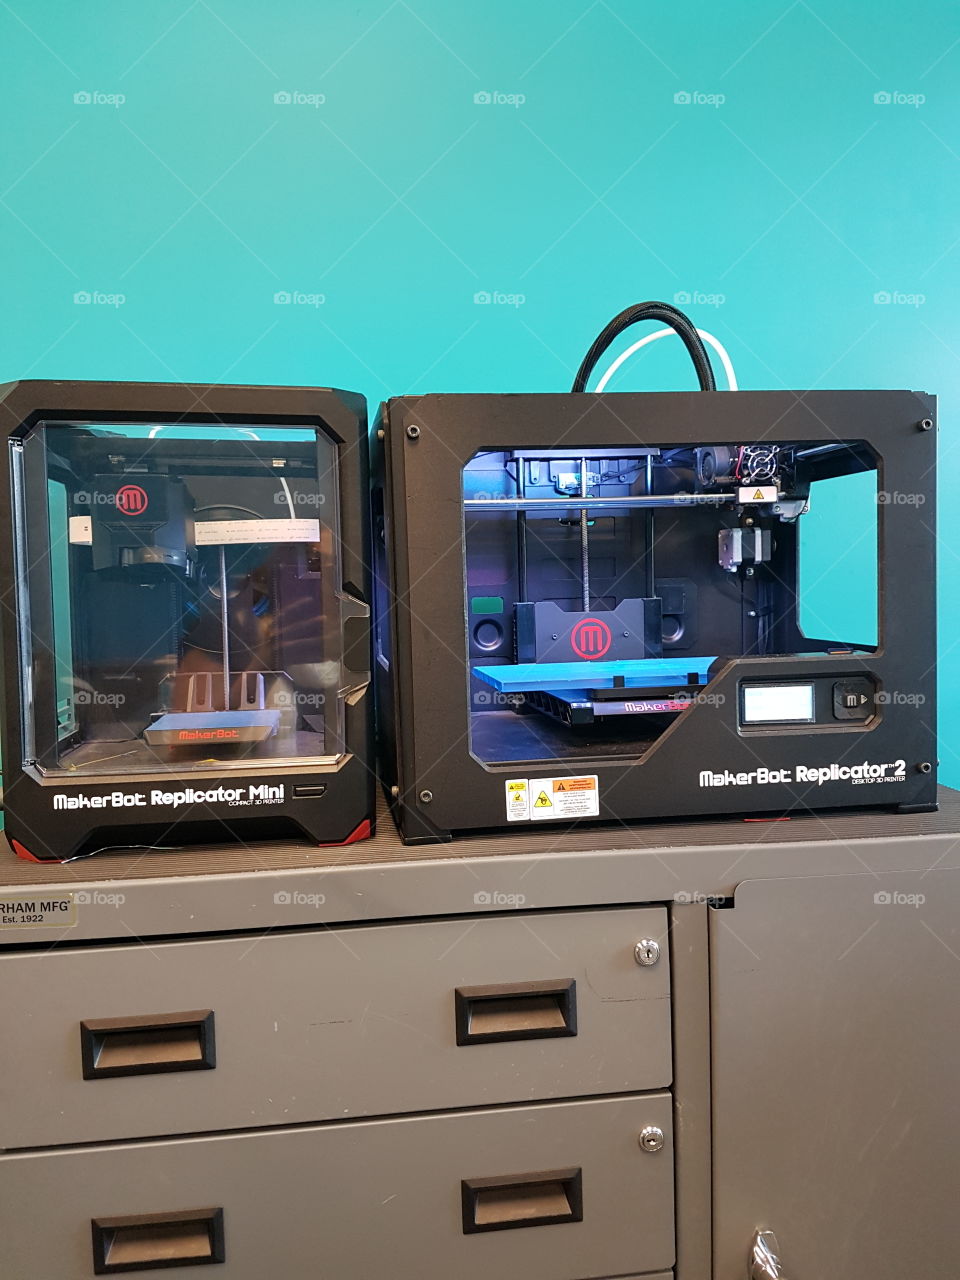 MakerBot Raplicator 2 3D printer